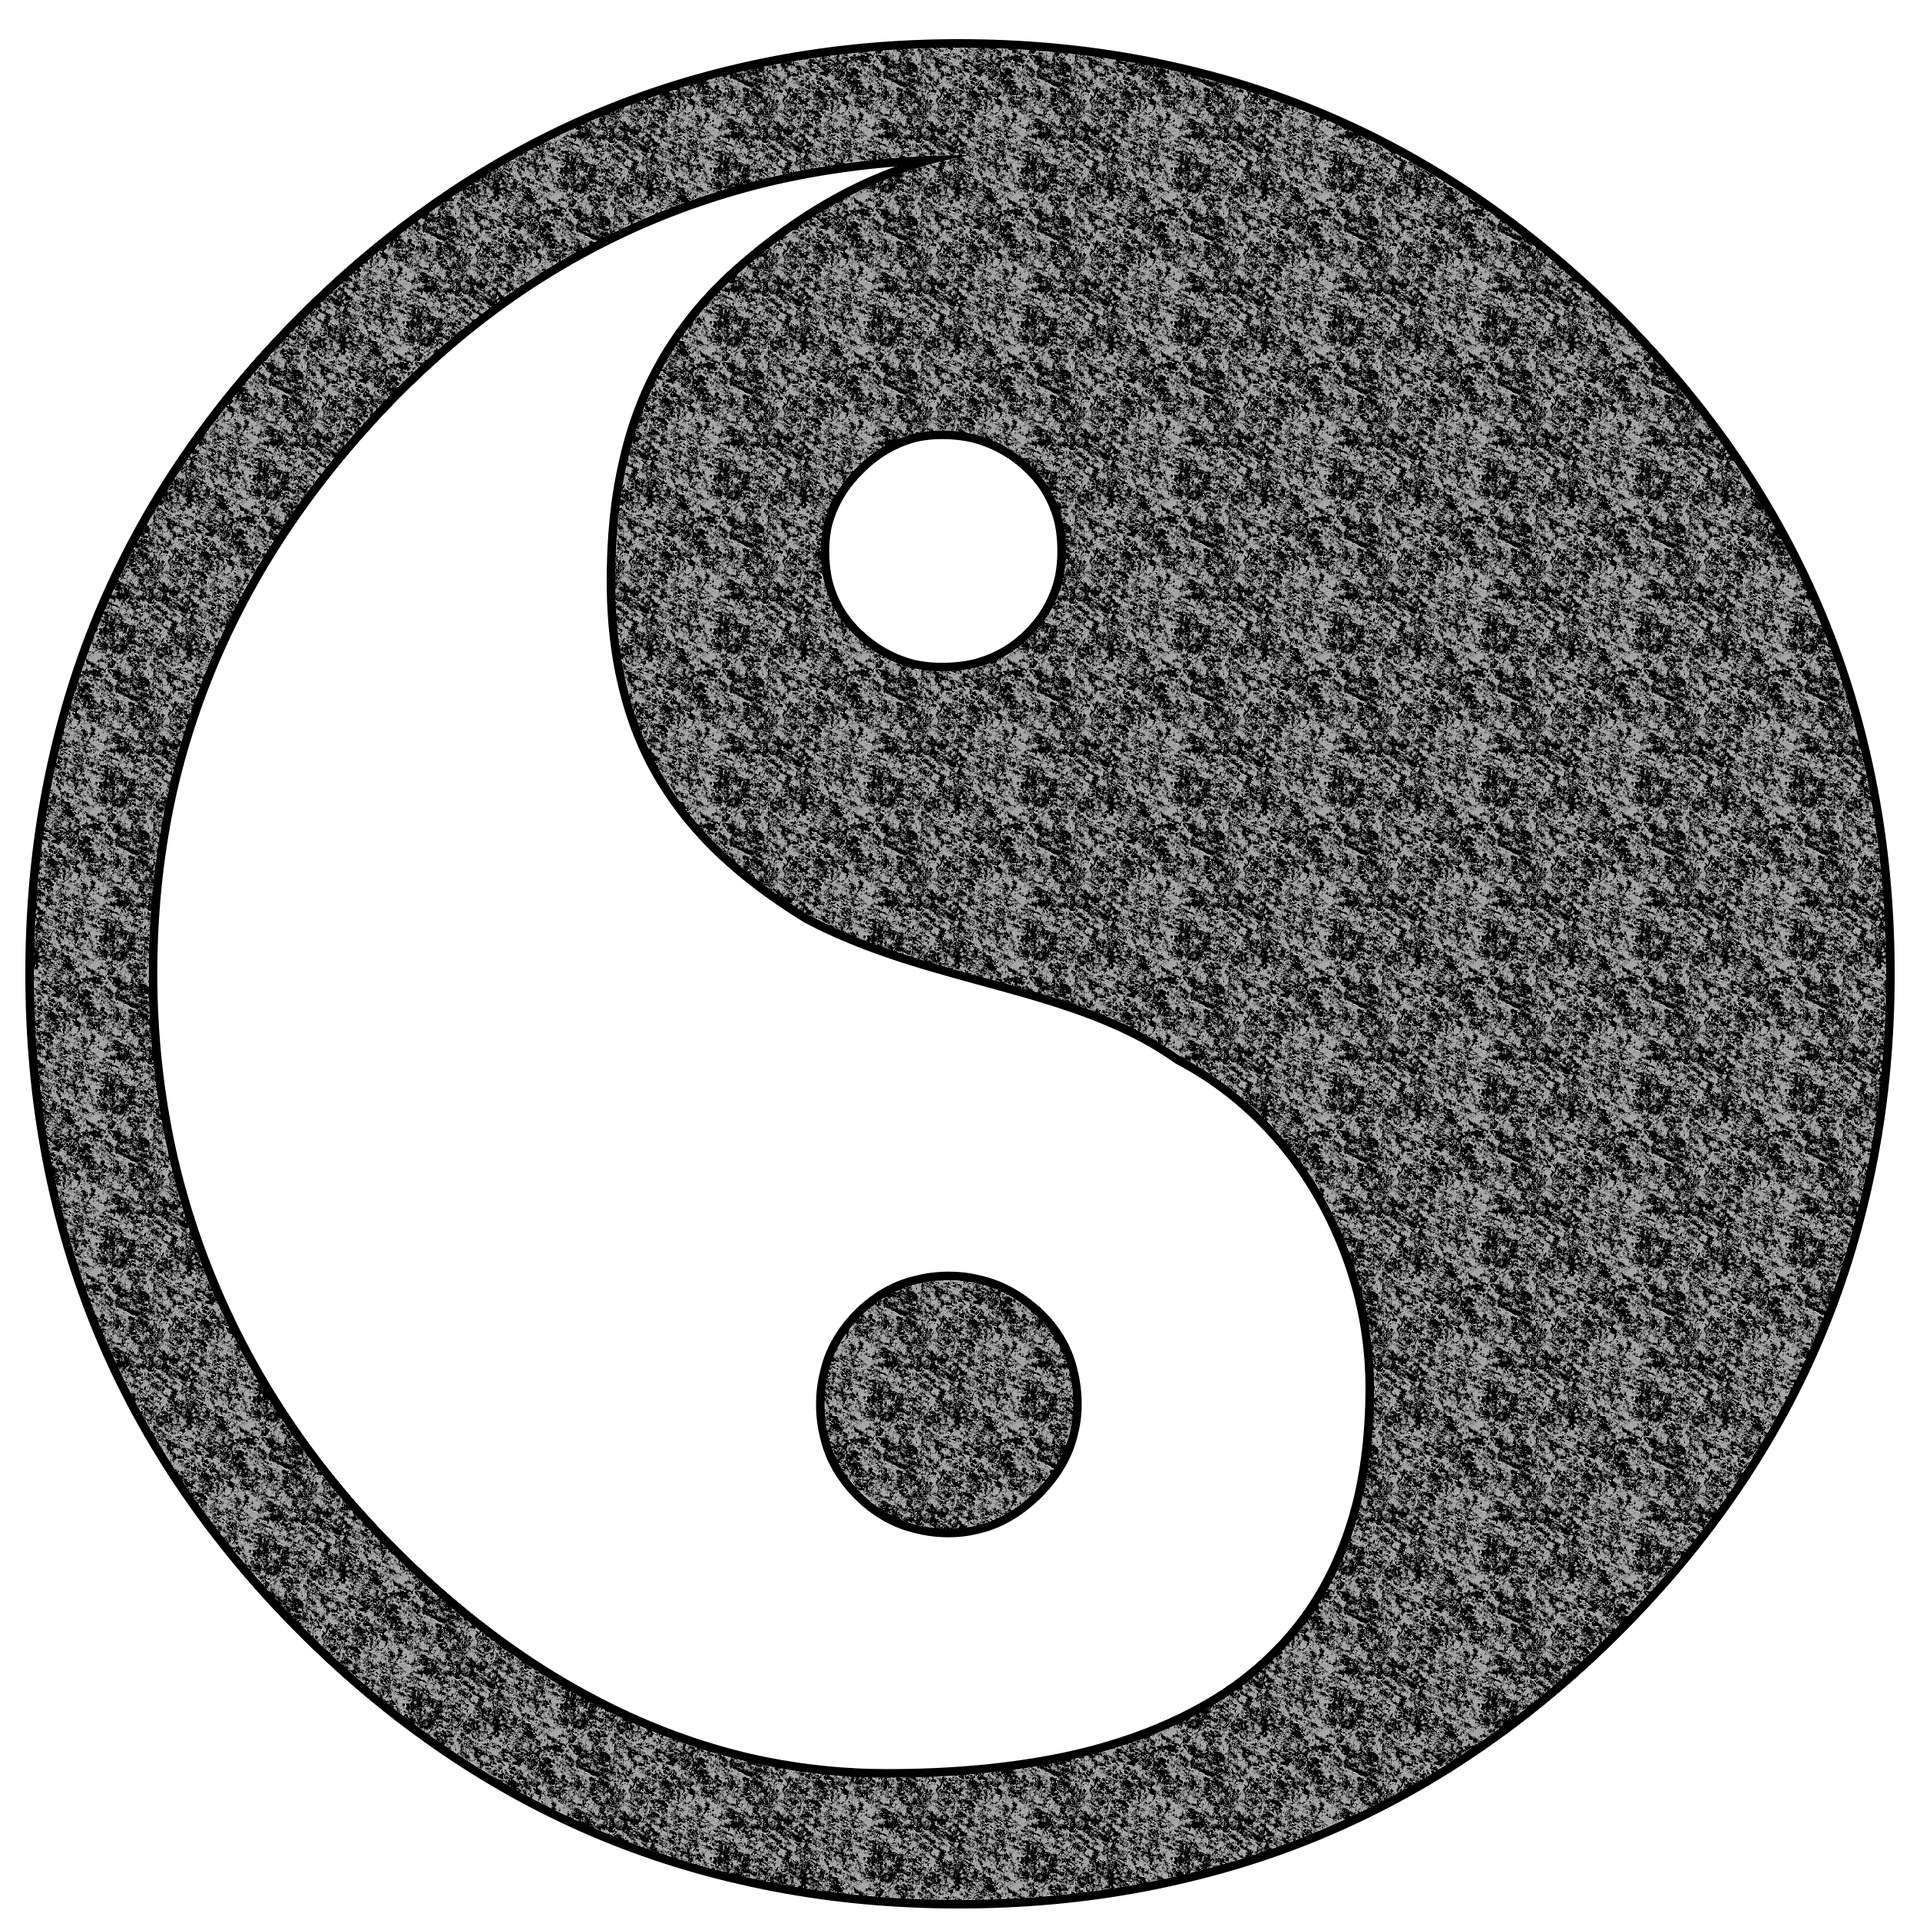 Yin and yang 1494550 1920